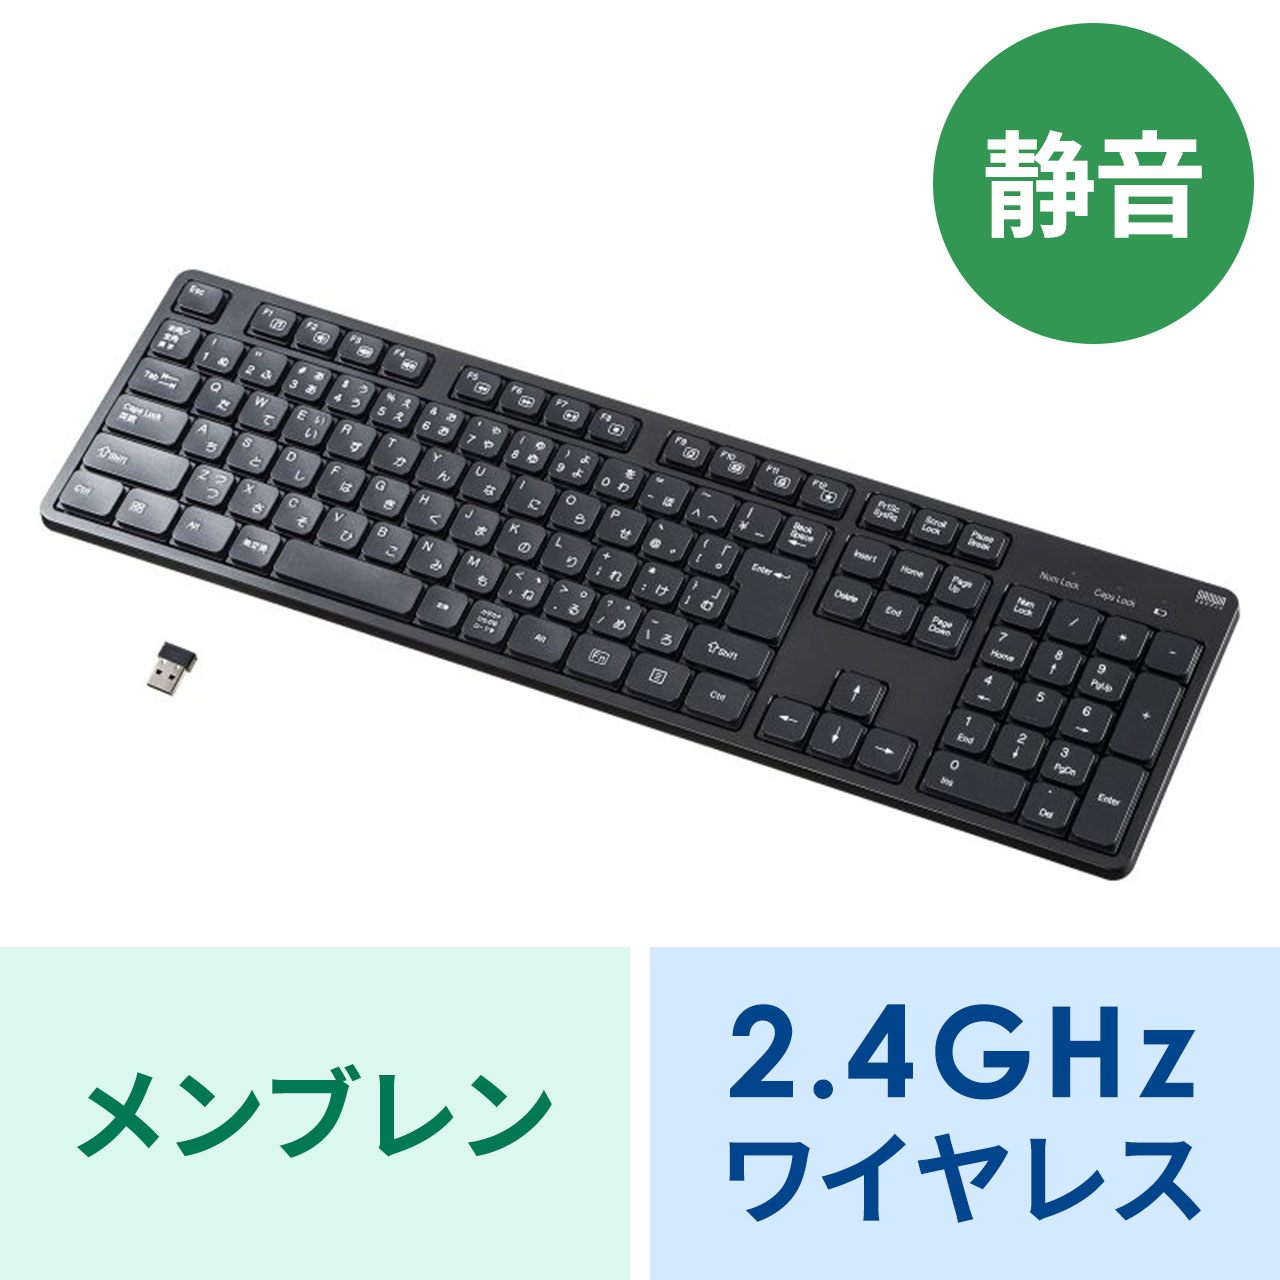 2.4GHz ワイヤレスキーボード テンキーあり メンブレン 静音 日本語